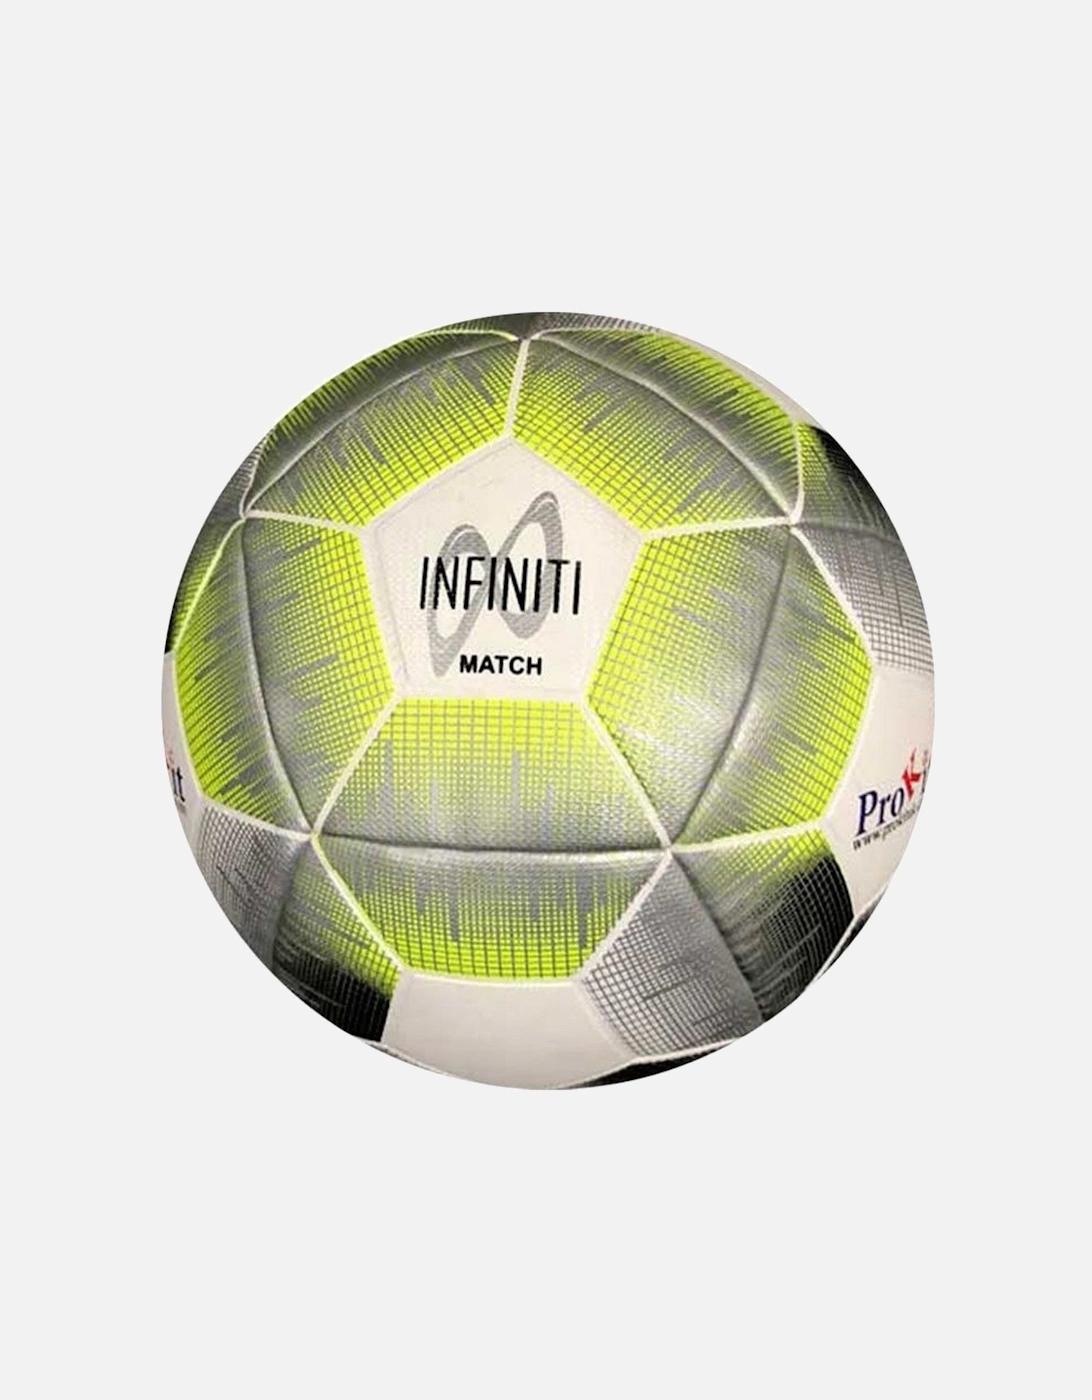 Infiniti Match Football, 2 of 1